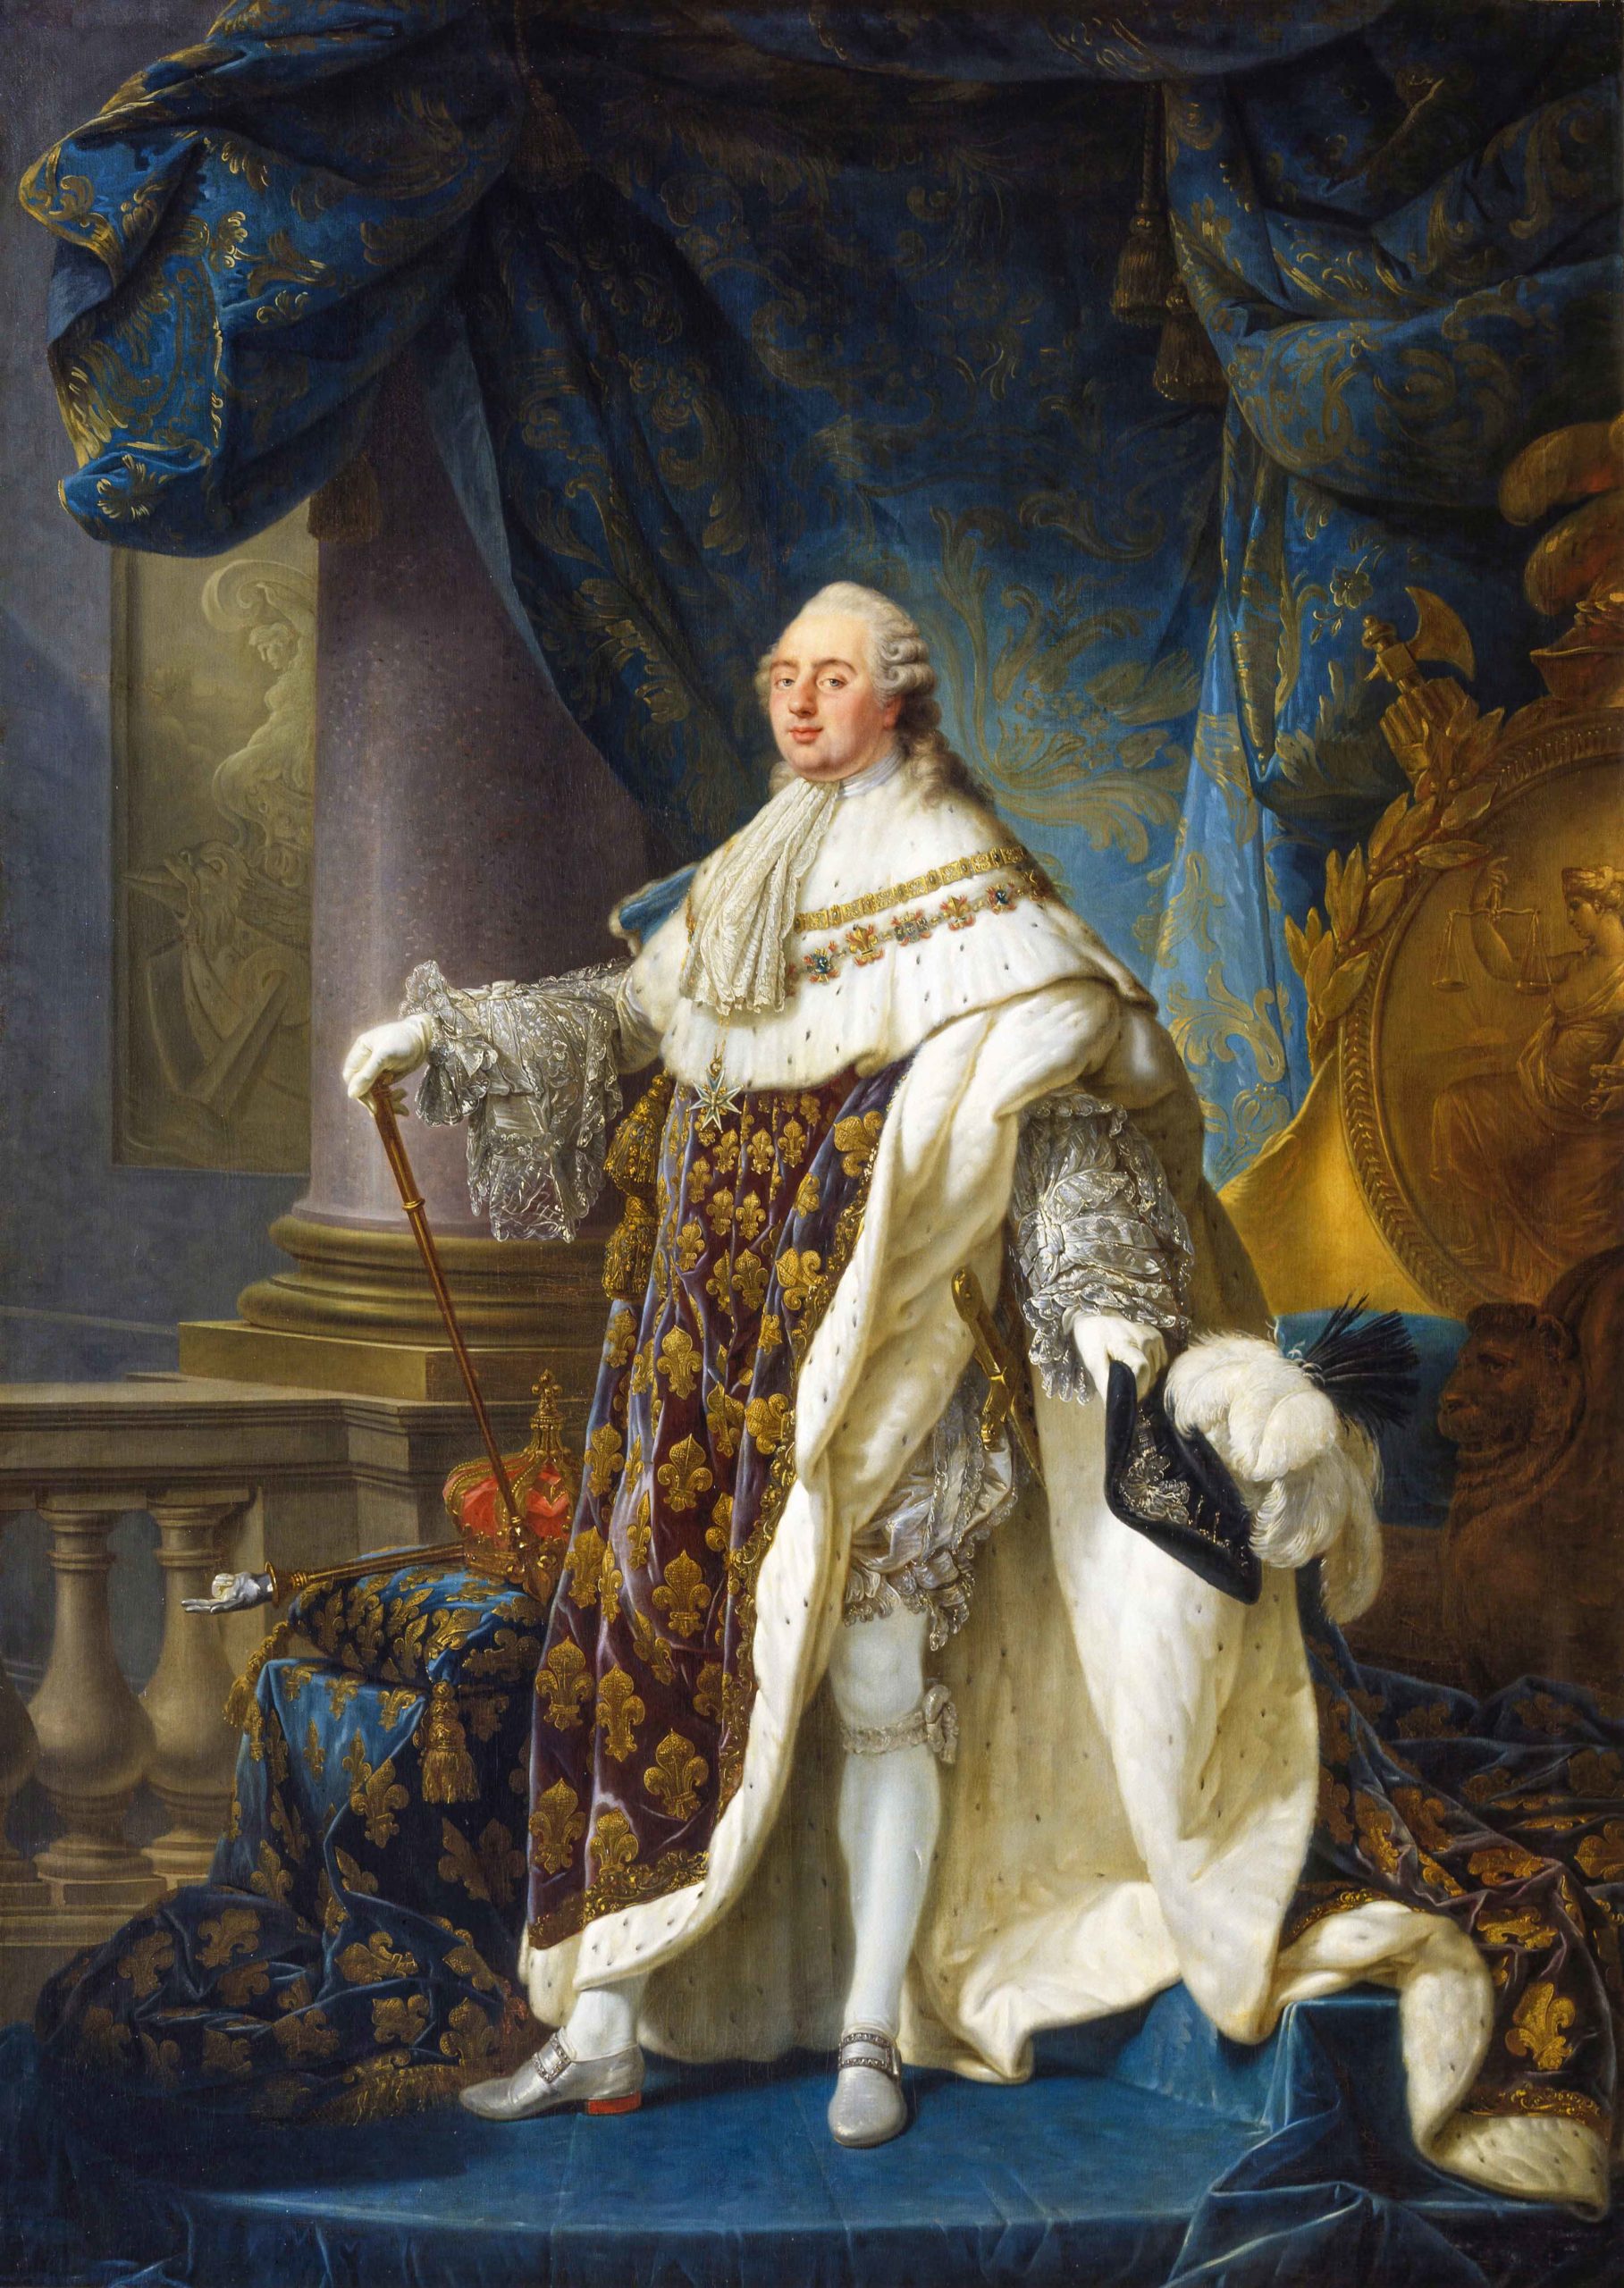 Louis XVI by Antoine-François Callet in 1779